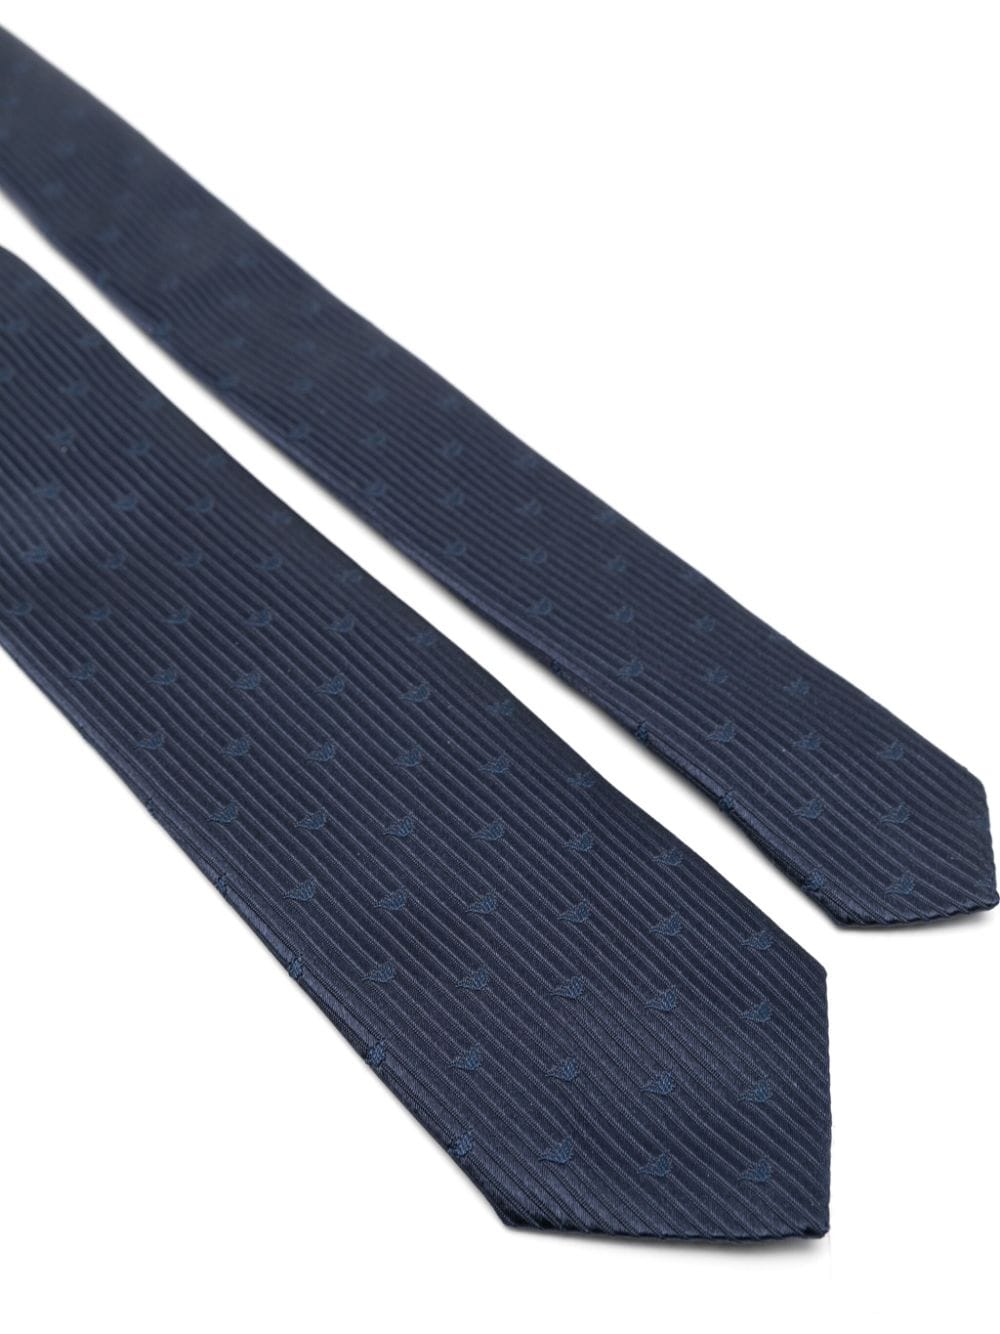 Cravatta blu per bambino con logo